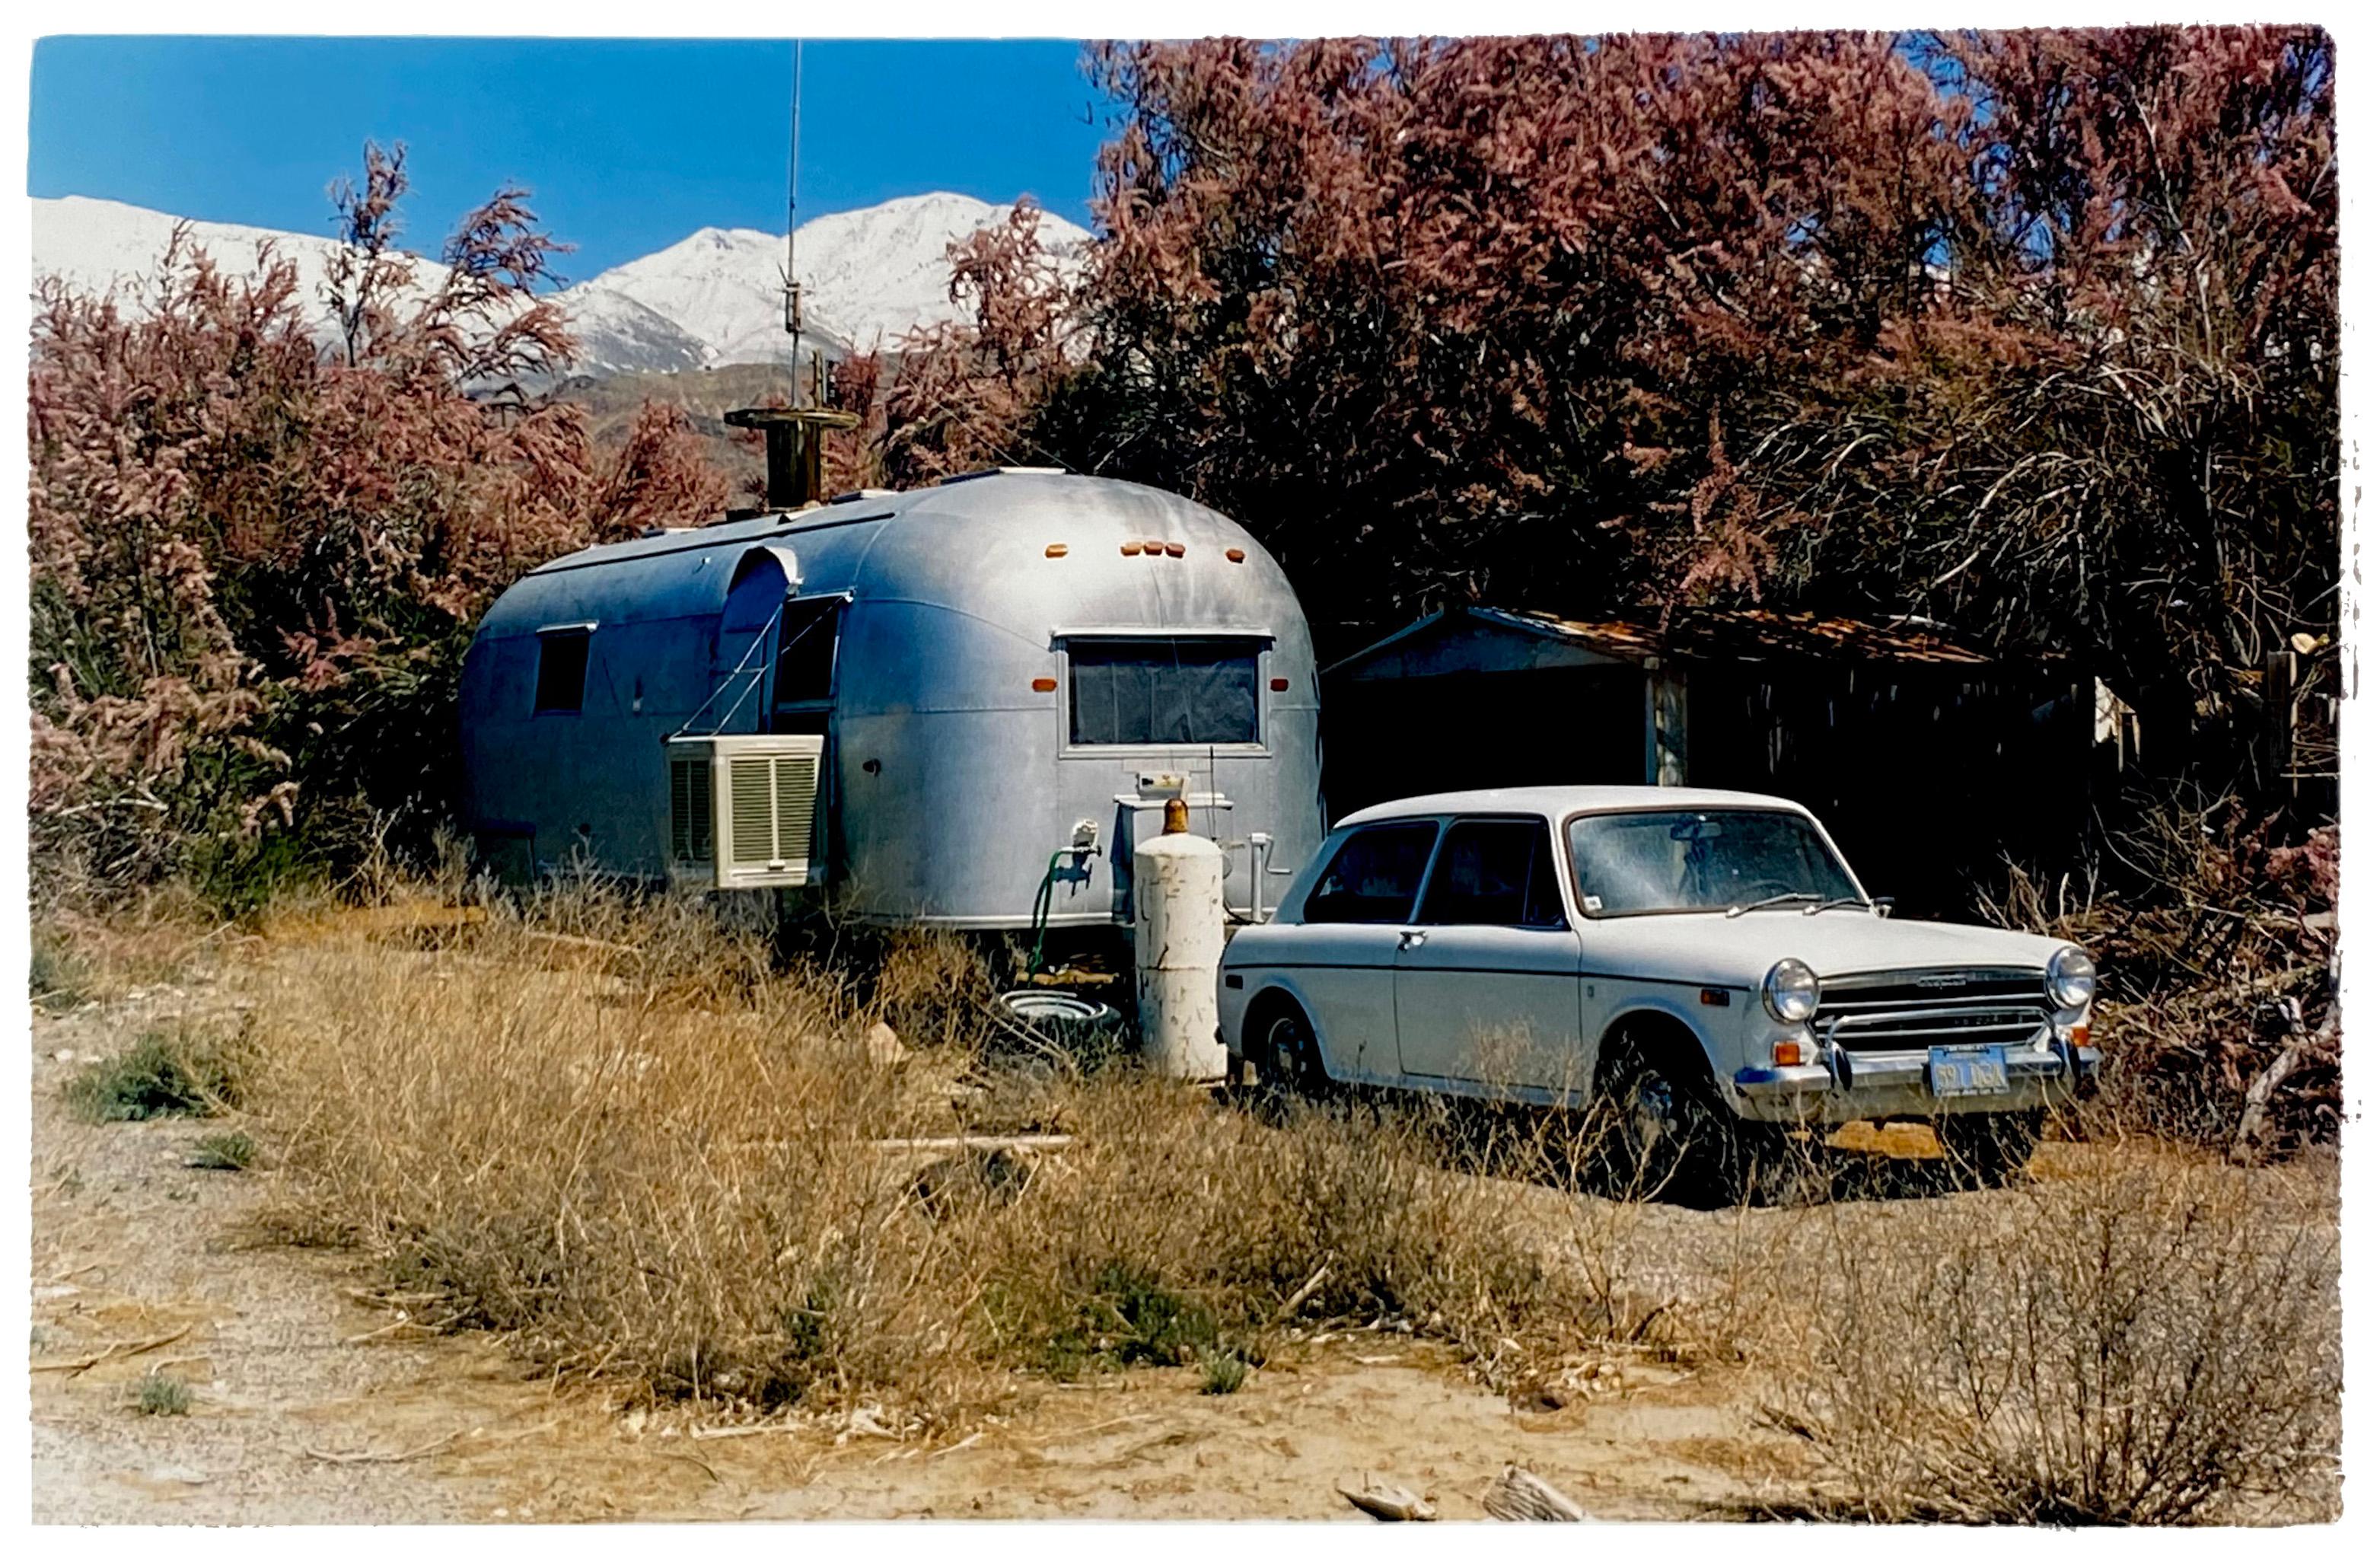 Richard Heeps Landscape Photograph – Austin and Airstream, Keeler, Kalifornien – amerikanische Farbfotografie